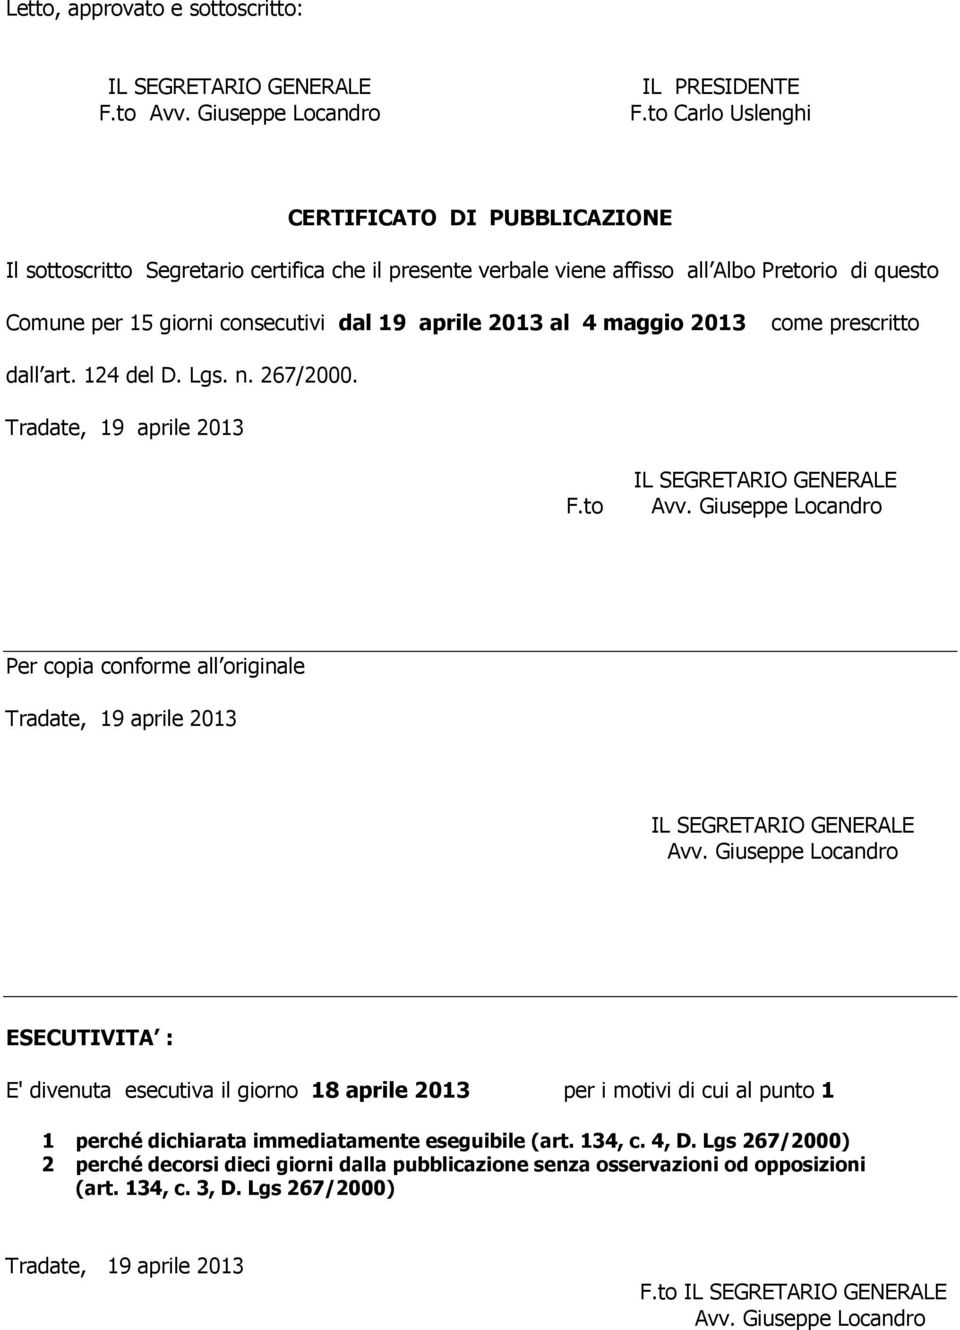 giorni consecutivi dal 19 aprile 2013 al 4 maggio 2013 come prescritto dall art. 124 del D. Lgs. n. 267/2000. F.